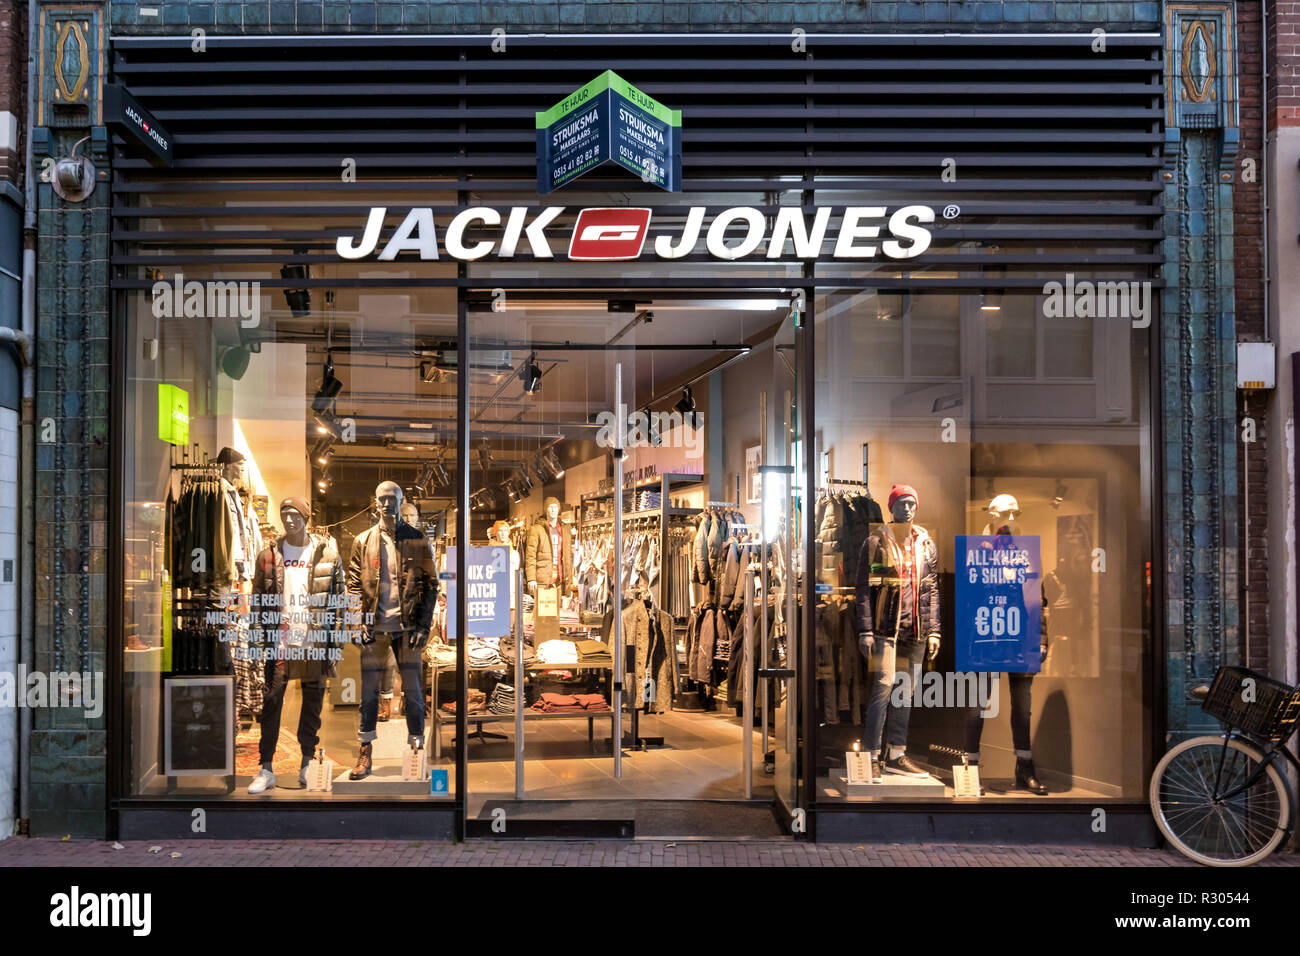 Jack&Jones in Sneek, Niederlande. Jack & Jones ist eine Marke der  Bestseller A/S ist ein privat geführtes Familienunternehmen Kleidung Firma  mit Sitz in Dänemark Stockfotografie - Alamy